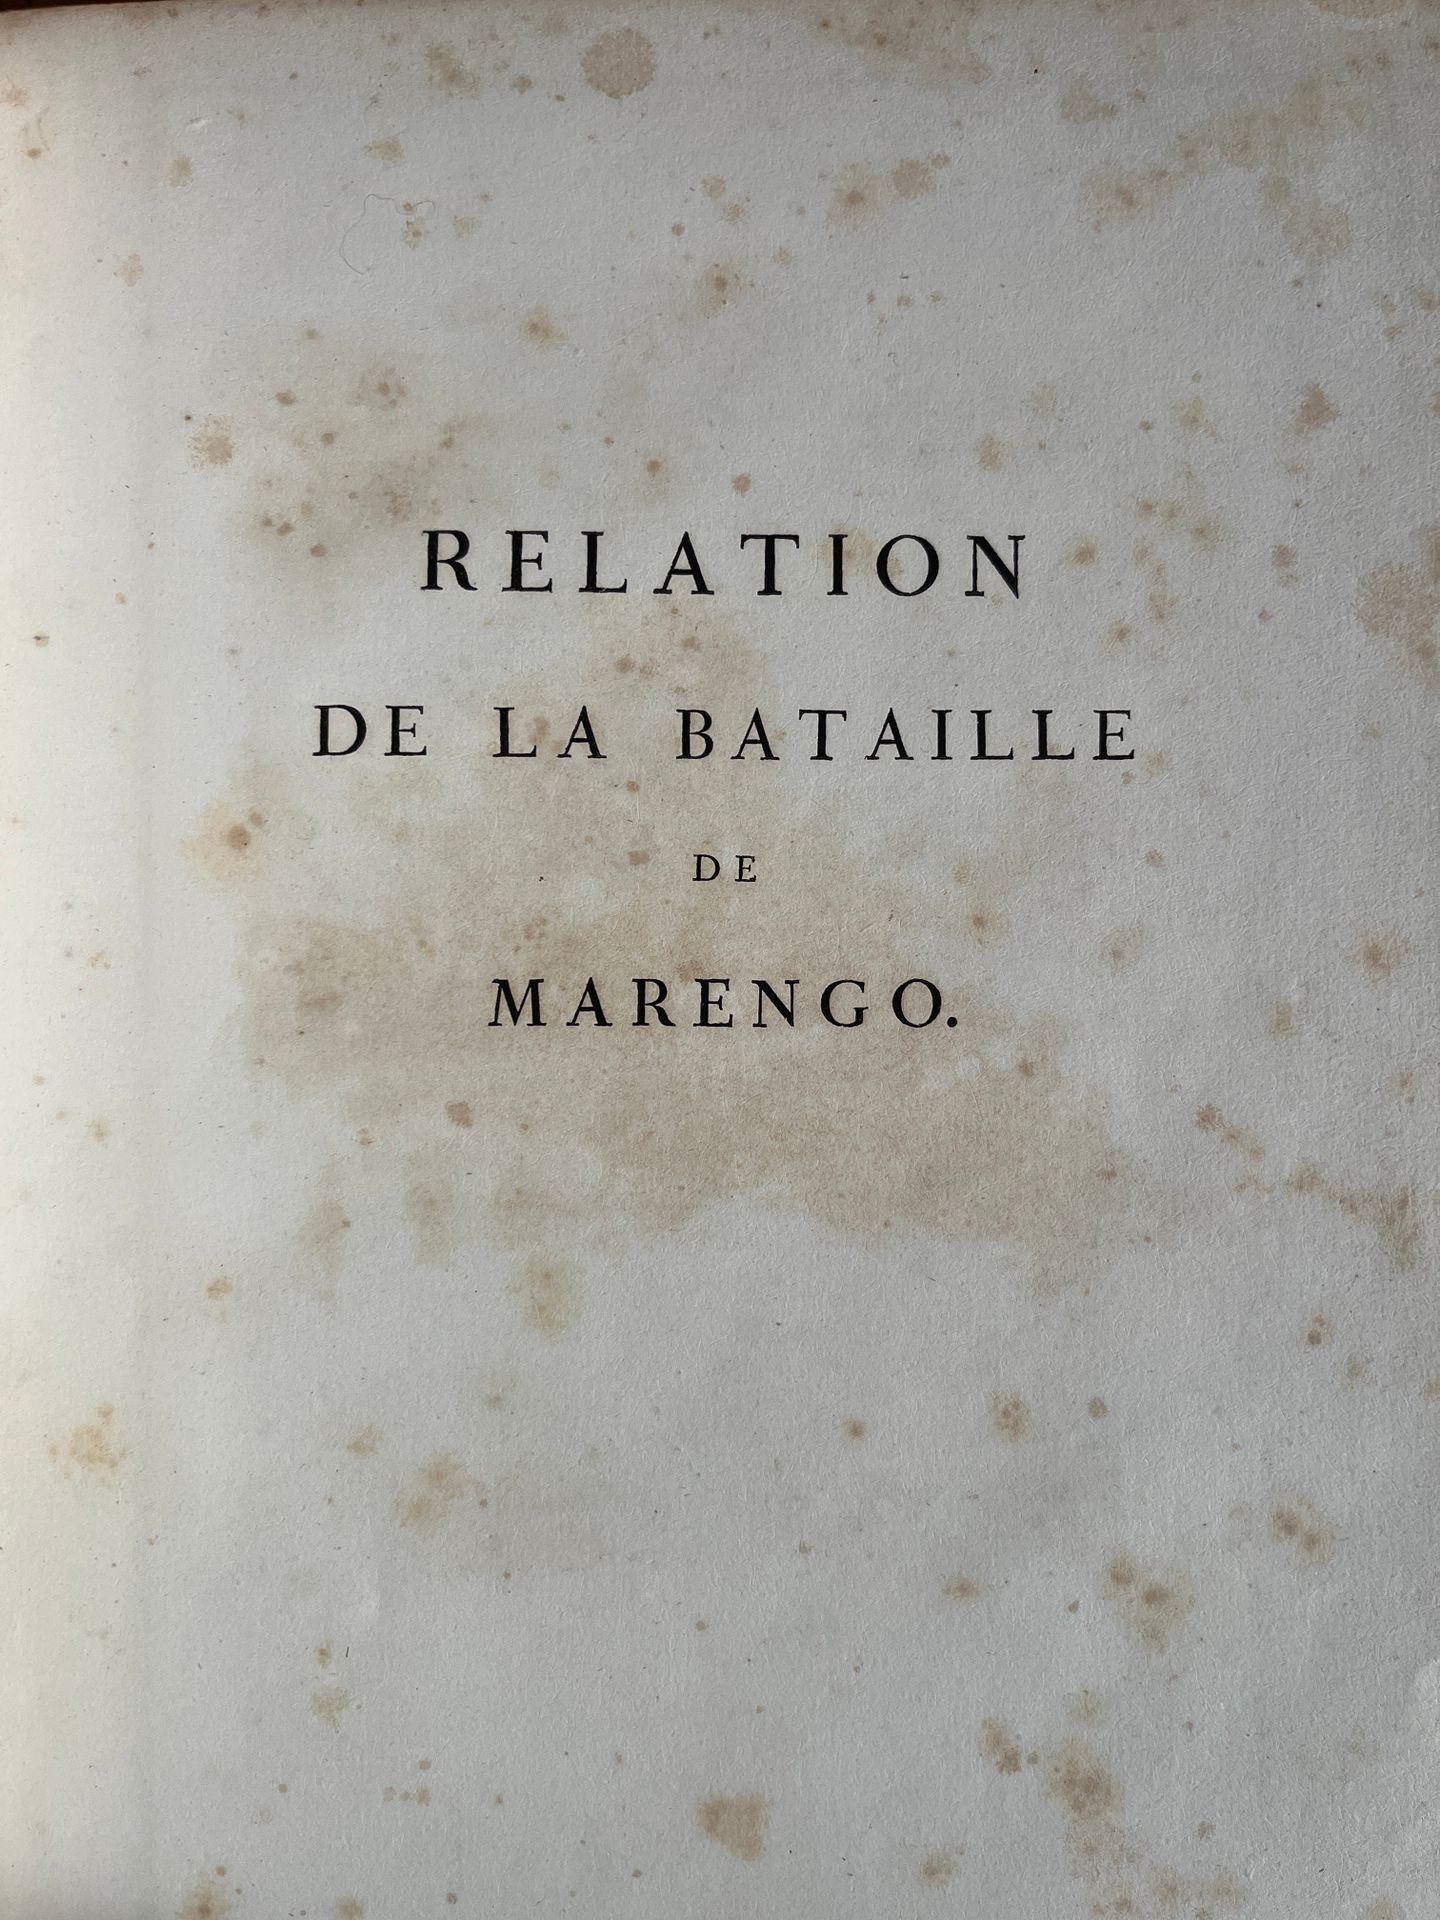 Null [BATAILLE]
Relation de la bataille de Marengo. Paris, chez Alex Berthier 18&hellip;